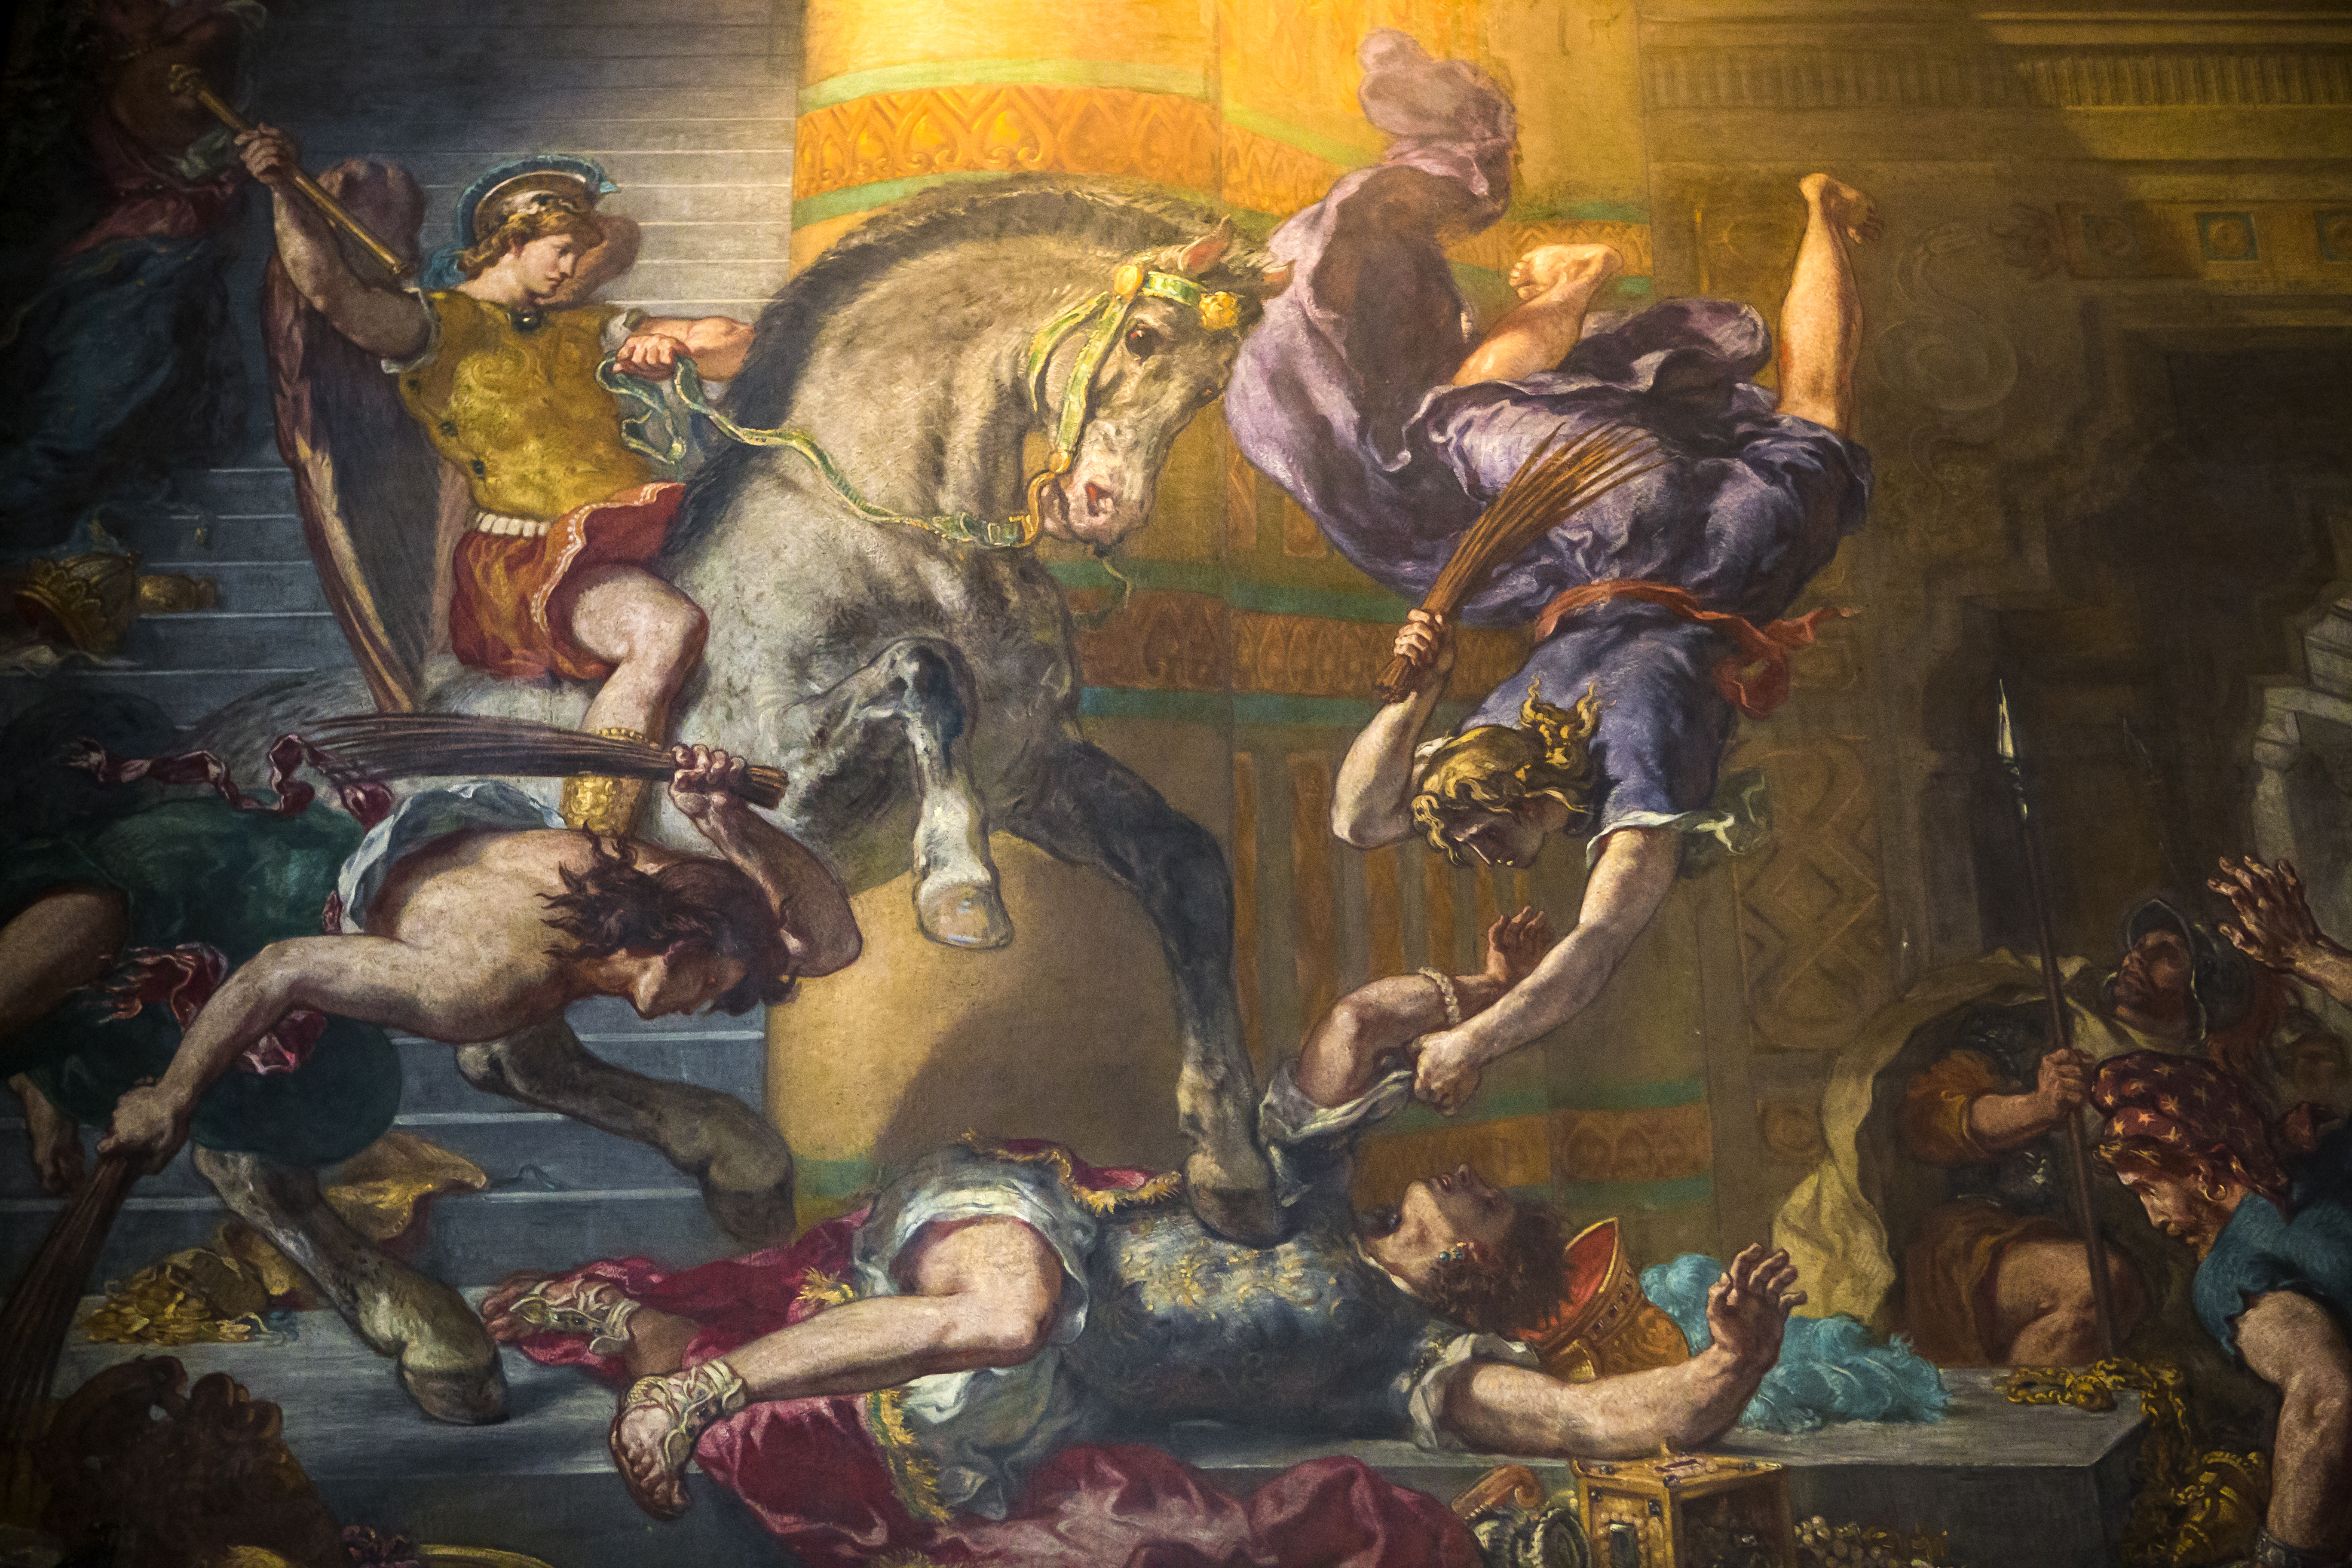 <p><strong>Изгубен стенопис на Леонардо да Винчи</strong></p>

<p>Историята с изгубената фреска &quot;Битката при Ангиари&quot; на великия маестро започва през 1503г. На Леонардо е възложено да изработи голям стенопис, който да отбележи празненствата по случай победата на Република Флоренция над Милано в битка, състояла се на 29 юни 1440 г. Художникът,&nbsp; изобразява на стената група от окървавени коне и ездачи в яростна битка, но година по-късно се отказва от проекта. Като вероятна причина за изоставянето на работата му се посочва провал на използвана експериментално технология за рисуване на фрески. Следите на творбата се губят, след като 50 години по-късно на художника Джорджо Вазари е поръчано да нарисува в залата нова фреска &ndash; &quot;Битката за Марчиано&quot;, която покрива незавършената работа на Да Винчи, наречена &quot;Битката при Ангиари&quot;.</p>